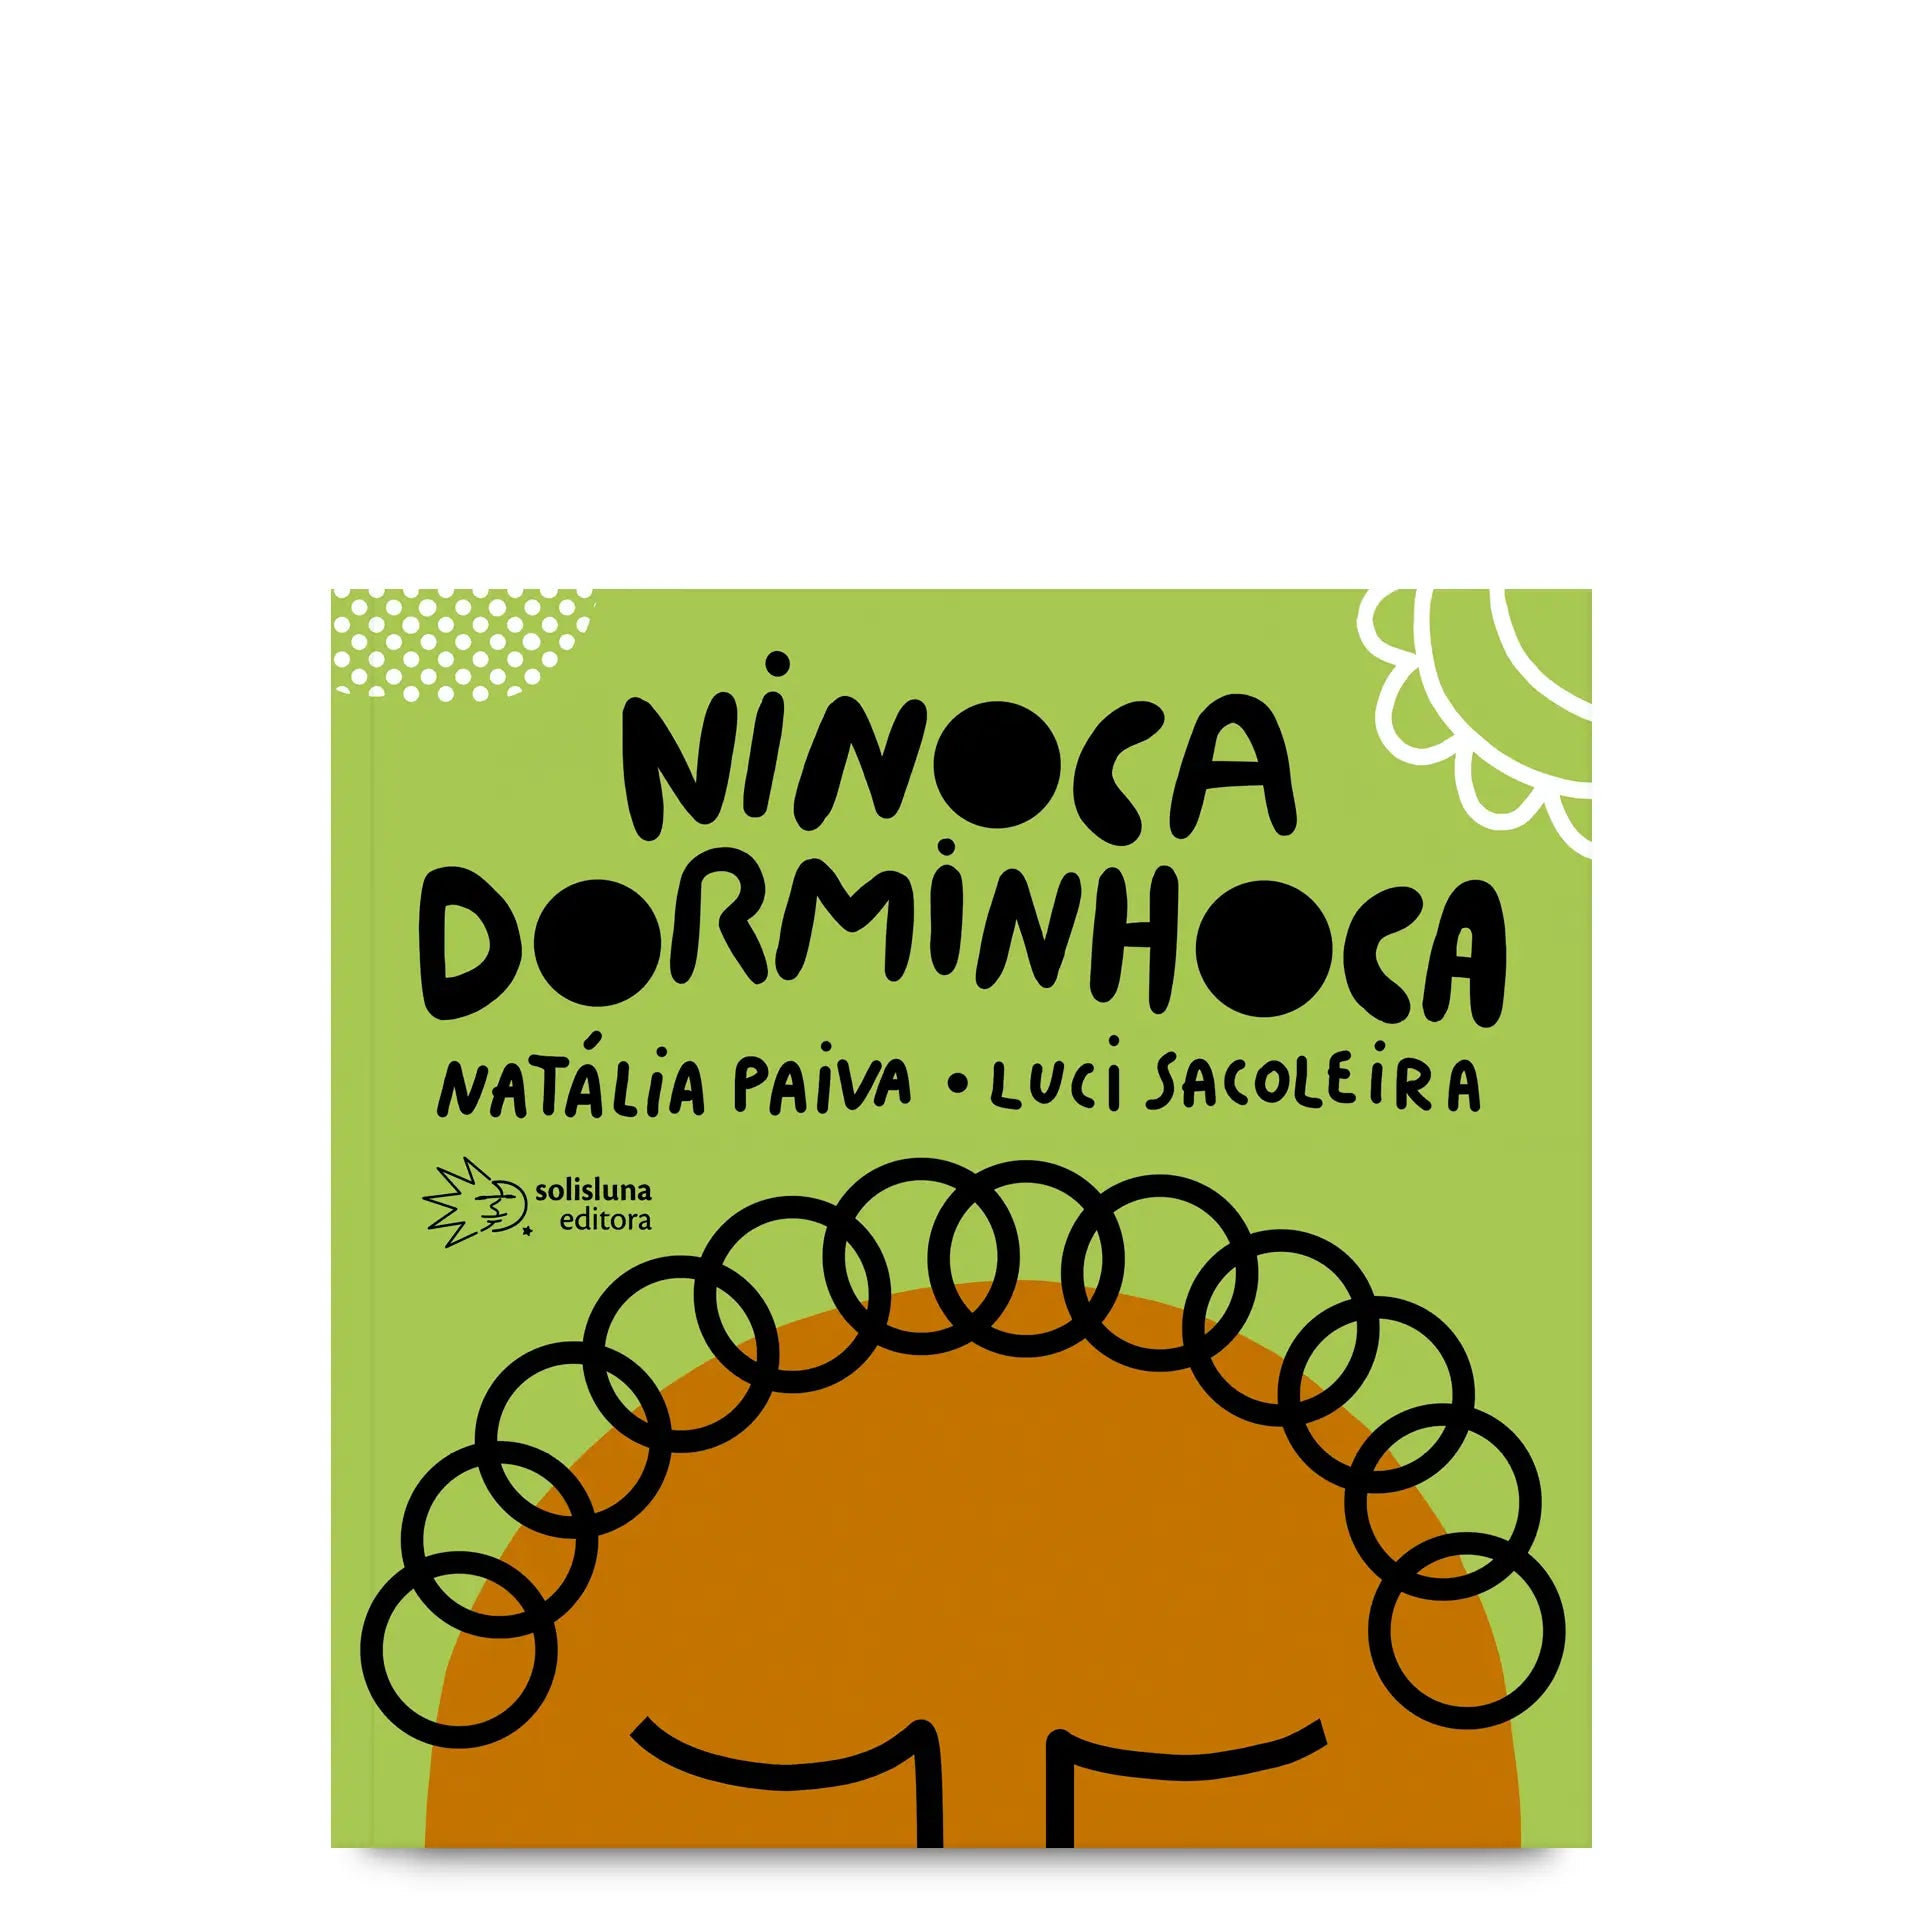 Ninoca Dorminhoca - livro de Natália Paiva com ilustrações de Luci Sacoleira